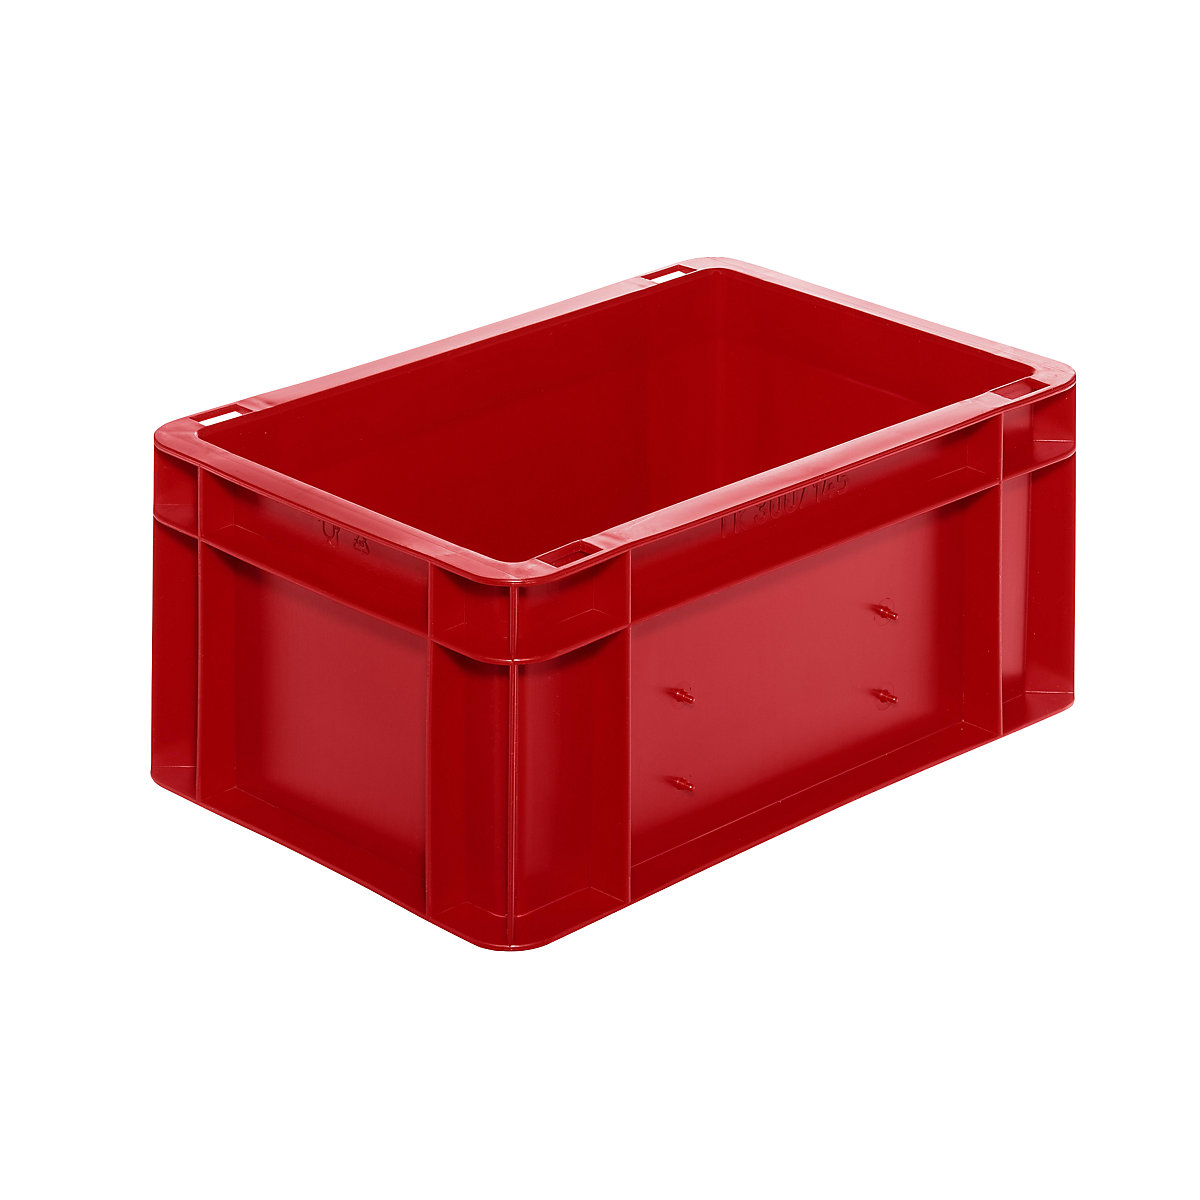 Euro-Format-Stapelbehälter, Wände und Boden geschlossen, LxBxH 300 x 200 x 145 mm, rot, VE 5 Stk